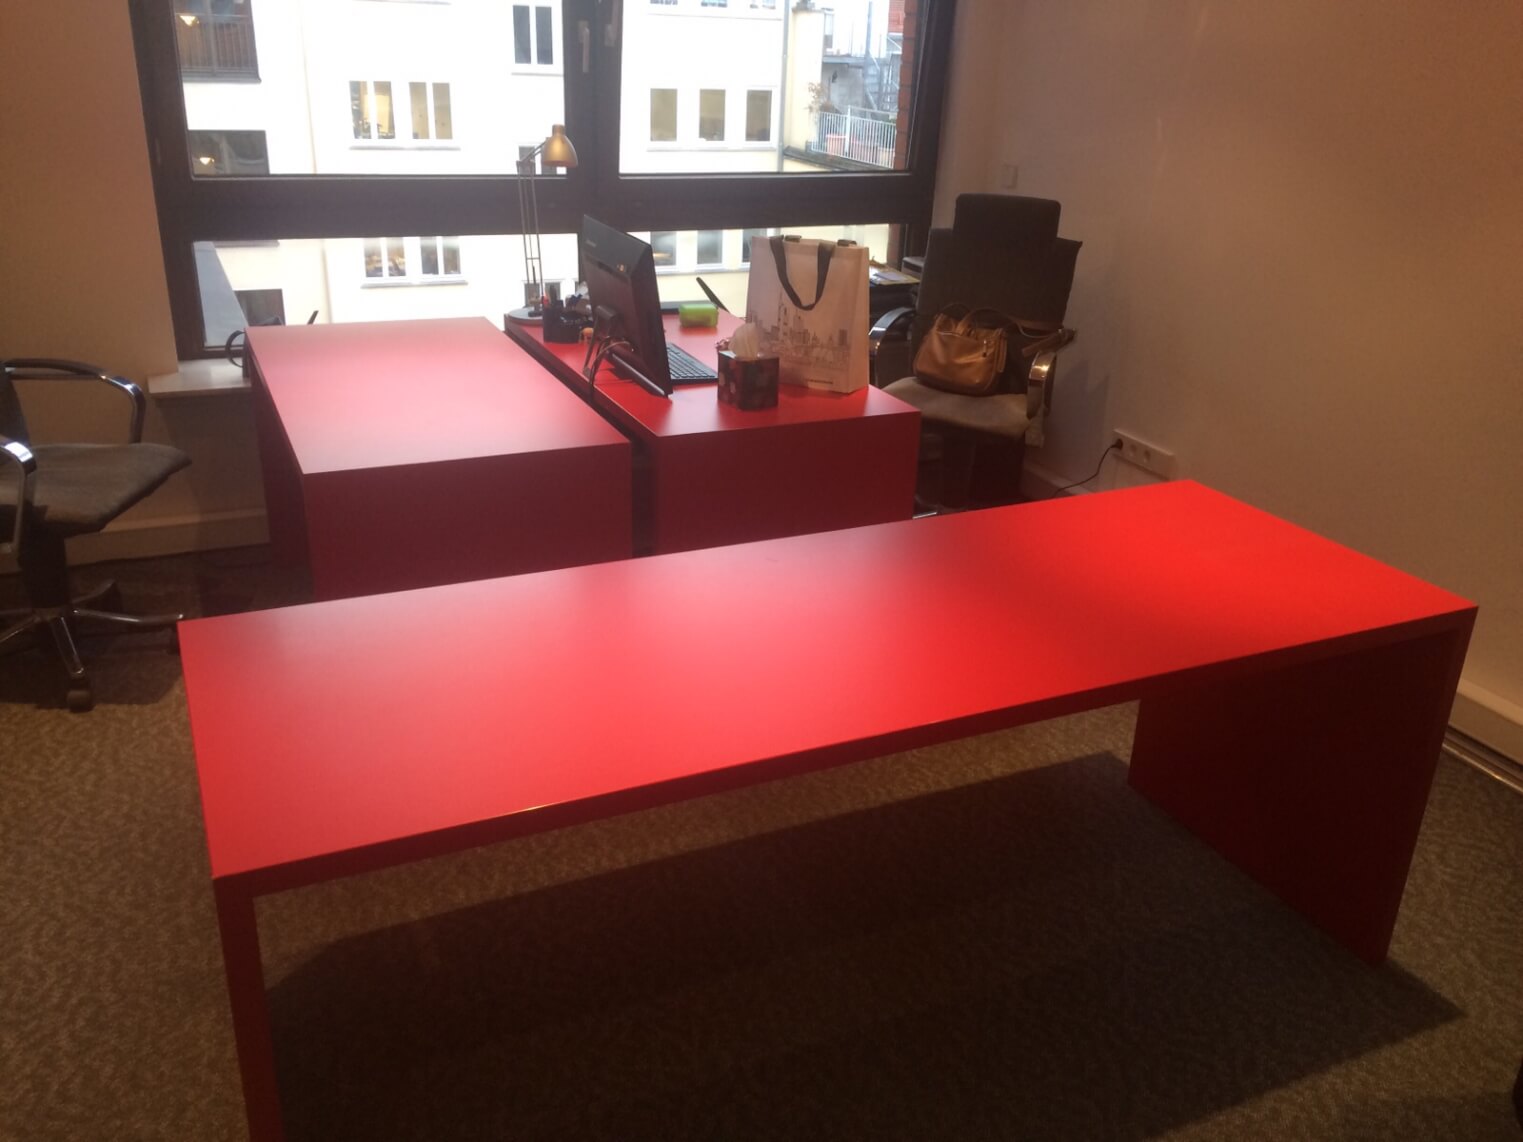 Büro Schreibtisch Folieren mit Selbstklebefolie von Rot zu Dunkelgrau Anthrazit 01